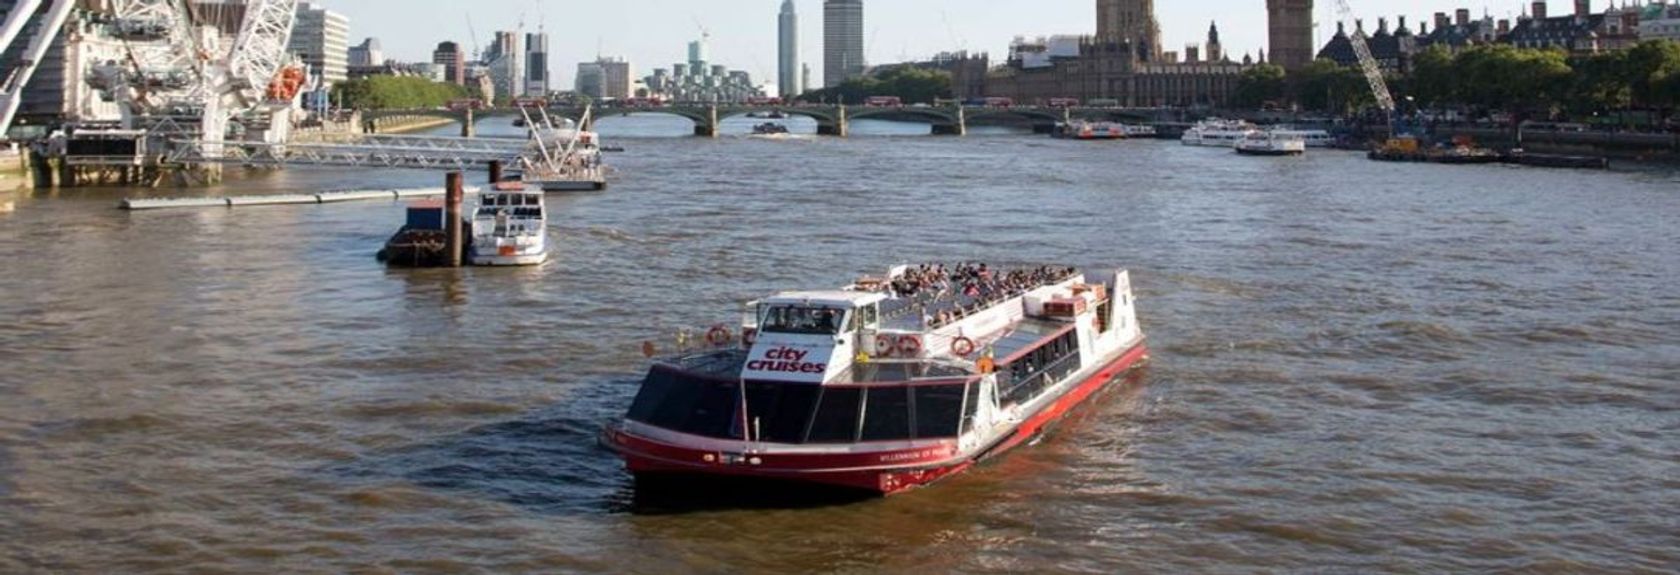 Descubra Londres da água durante este cruzeiro hop-on hop-off no rio Tâmisa. Durante o cruzeiro na água, você poderá ver os destaques mais famosos da cidade e o guia especializado lhe dirá tudo o que você precisa saber sobre Londres e seus pontos turísticos.